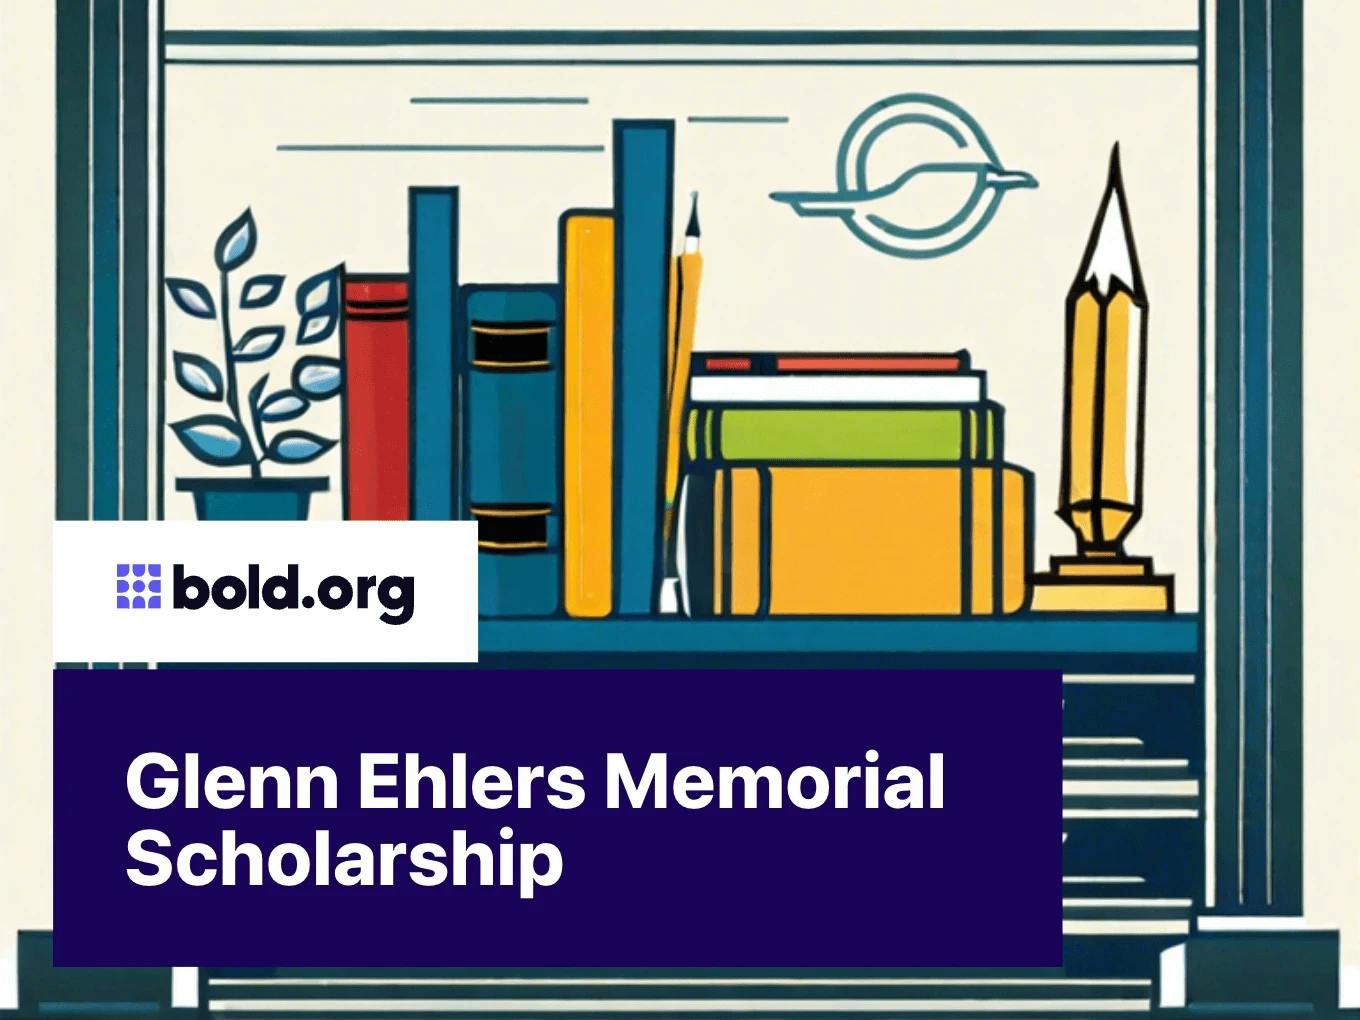 Glenn Ehlers Memorial Scholarship